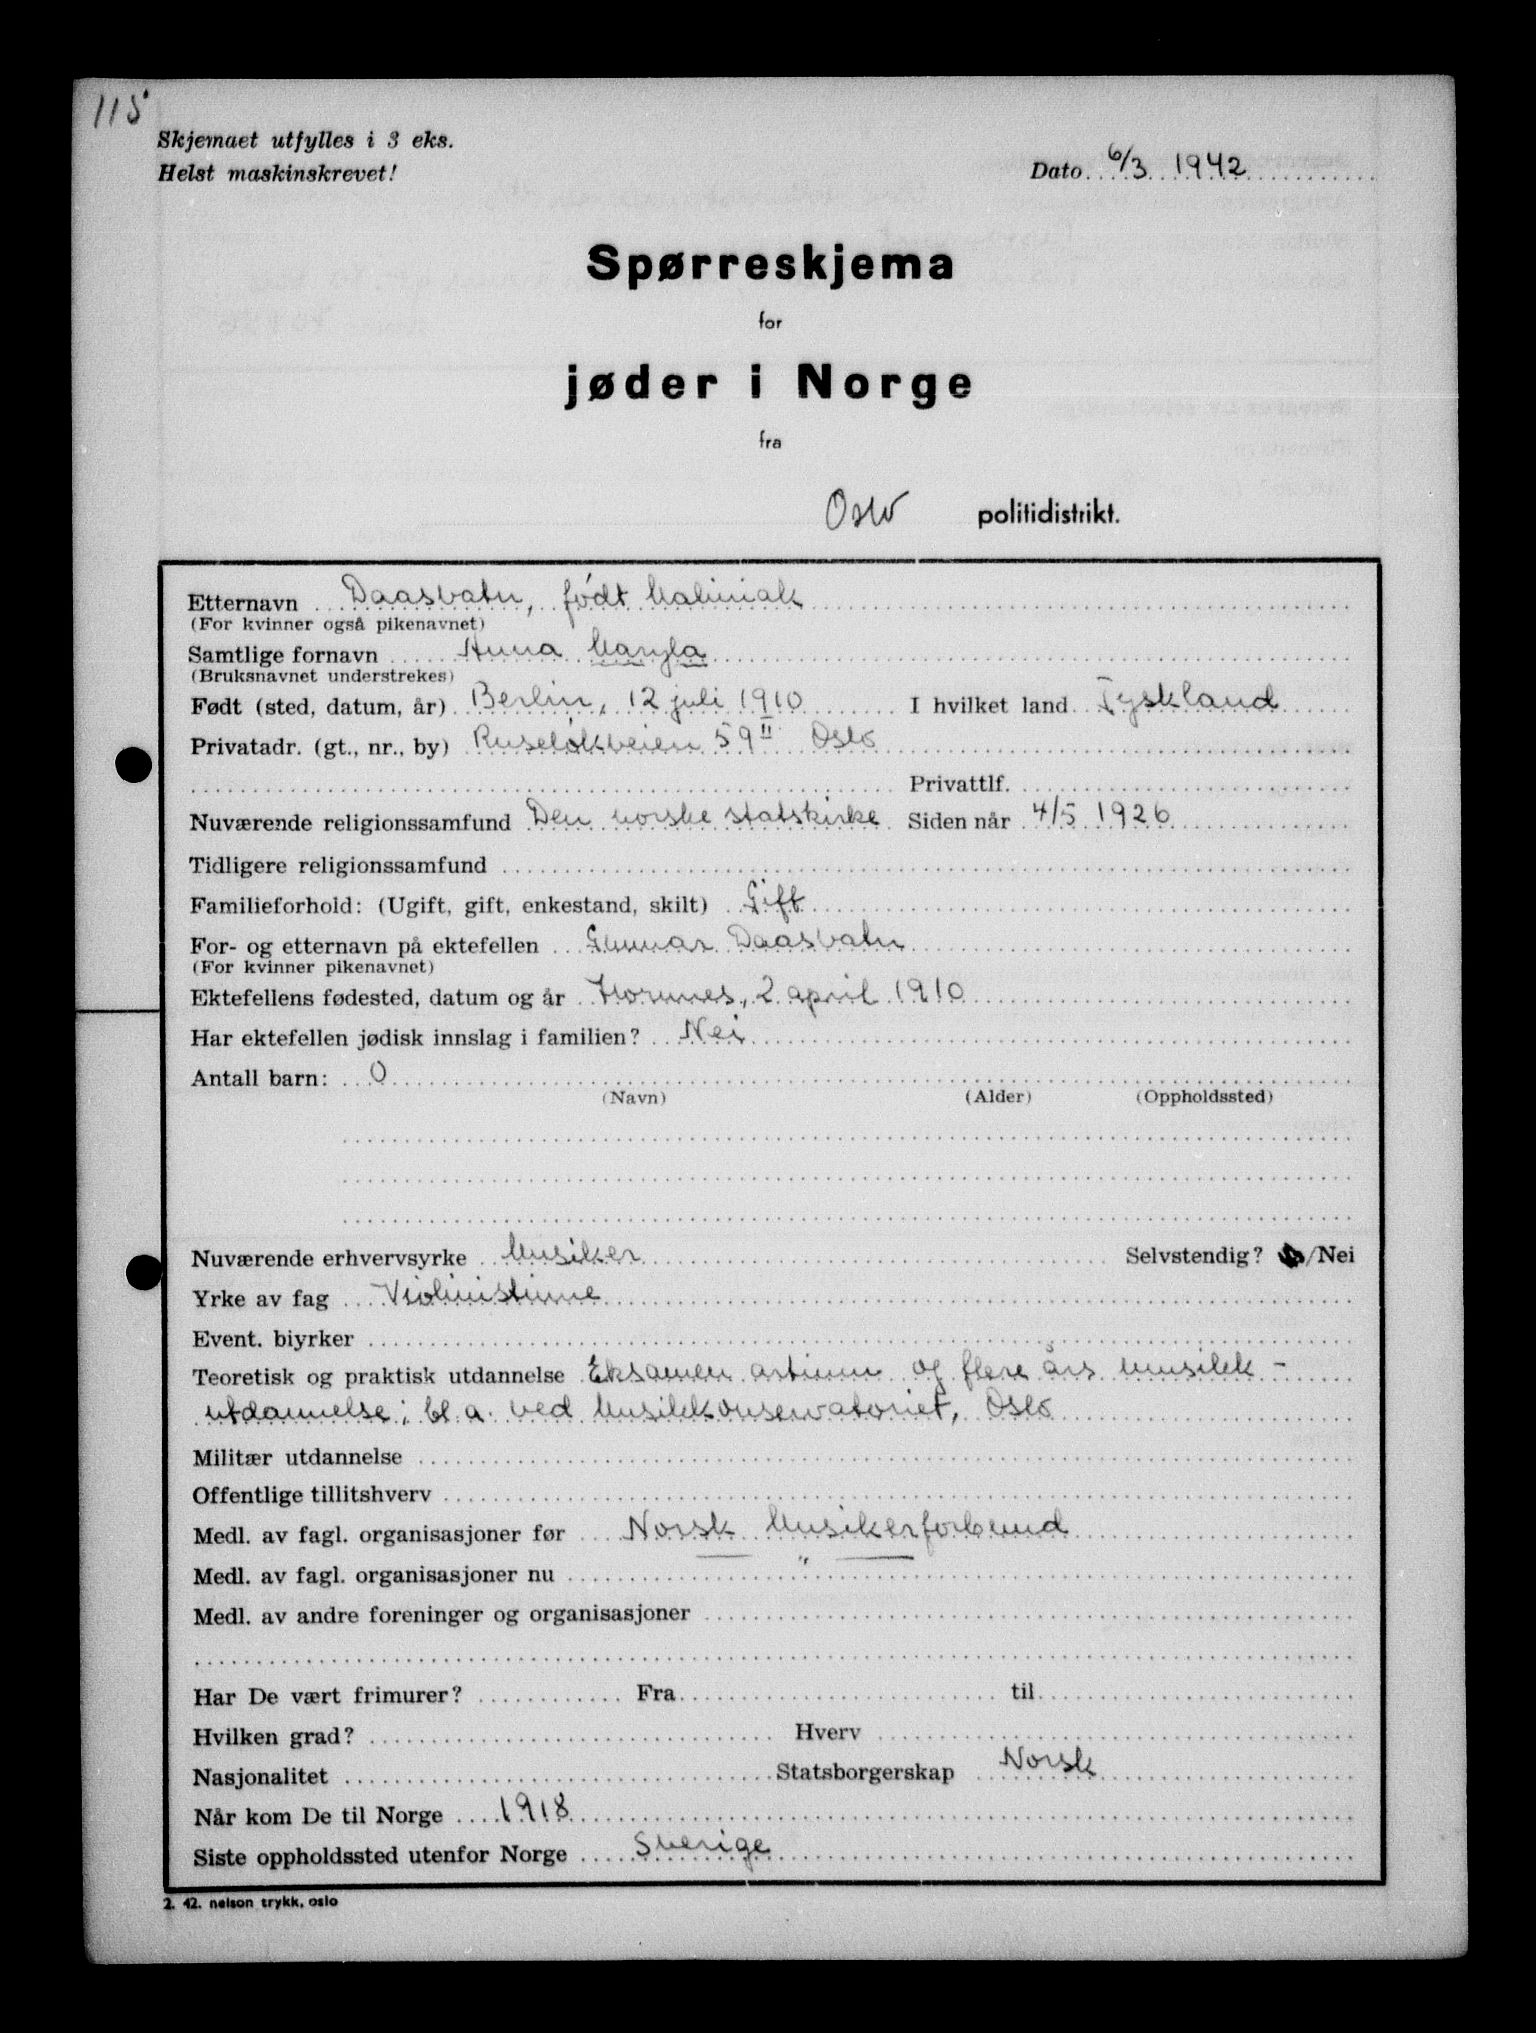 RA, Statspolitiet - Hovedkontoret / Osloavdelingen, G/Ga/L0009: Spørreskjema for jøder i Norge, Oslo Alexander-Gutman, 1942, s. 115